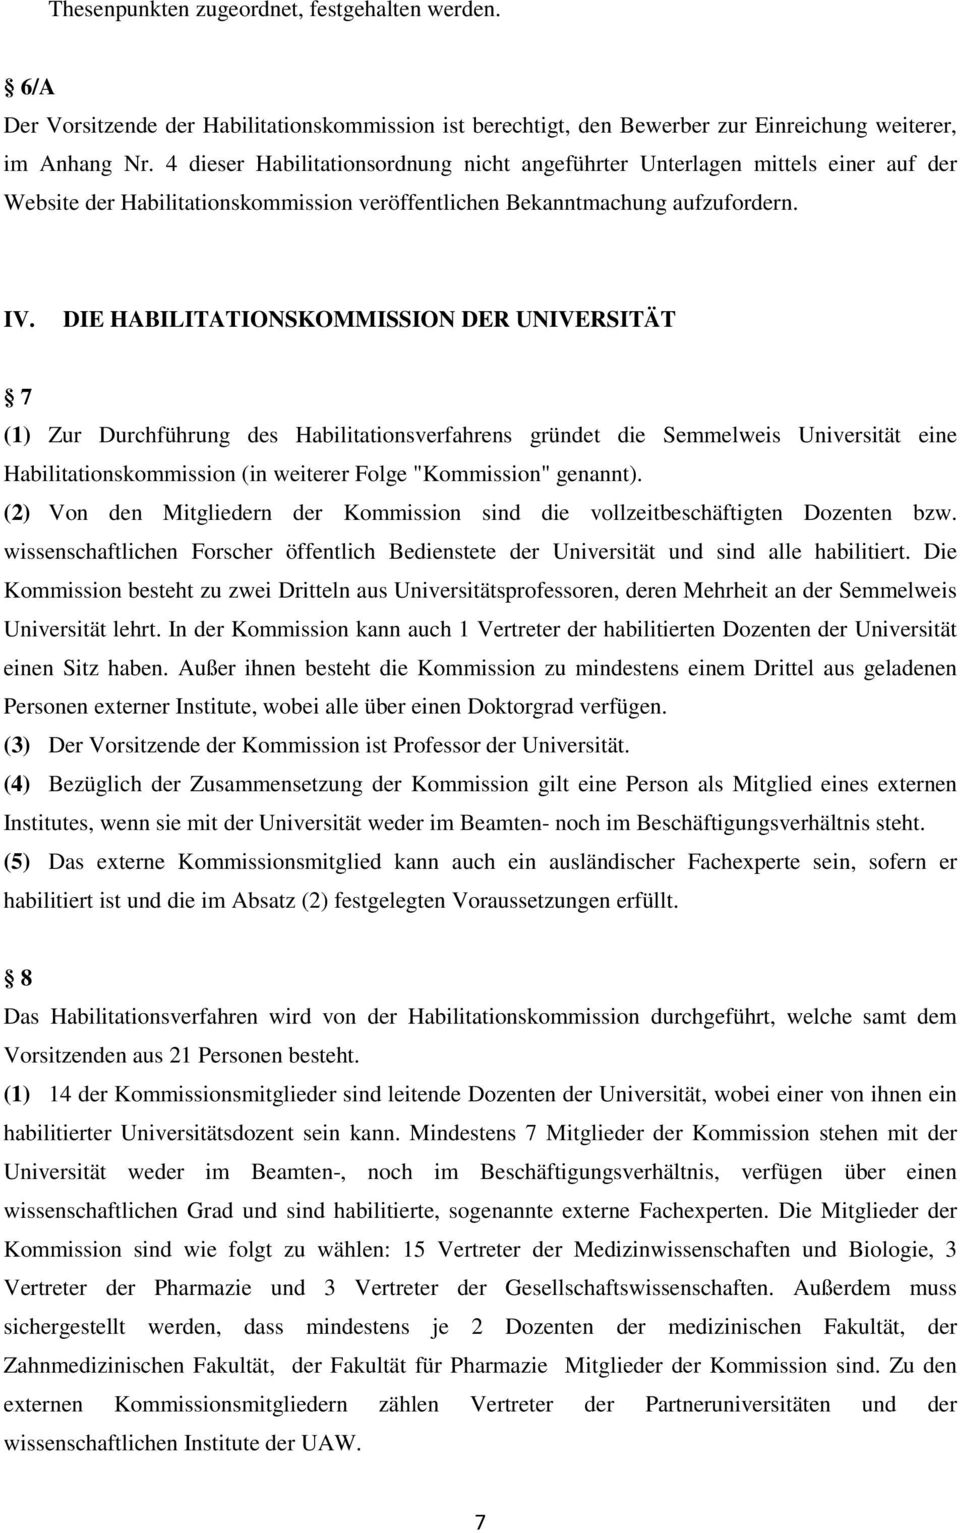 DIE HABILITATIONSKOMMISSION DER UNIVERSITÄT 7 (1) Zur Durchführung des Habilitationsverfahrens gründet die Semmelweis Universität eine Habilitationskommission (in weiterer Folge "Kommission" genannt).